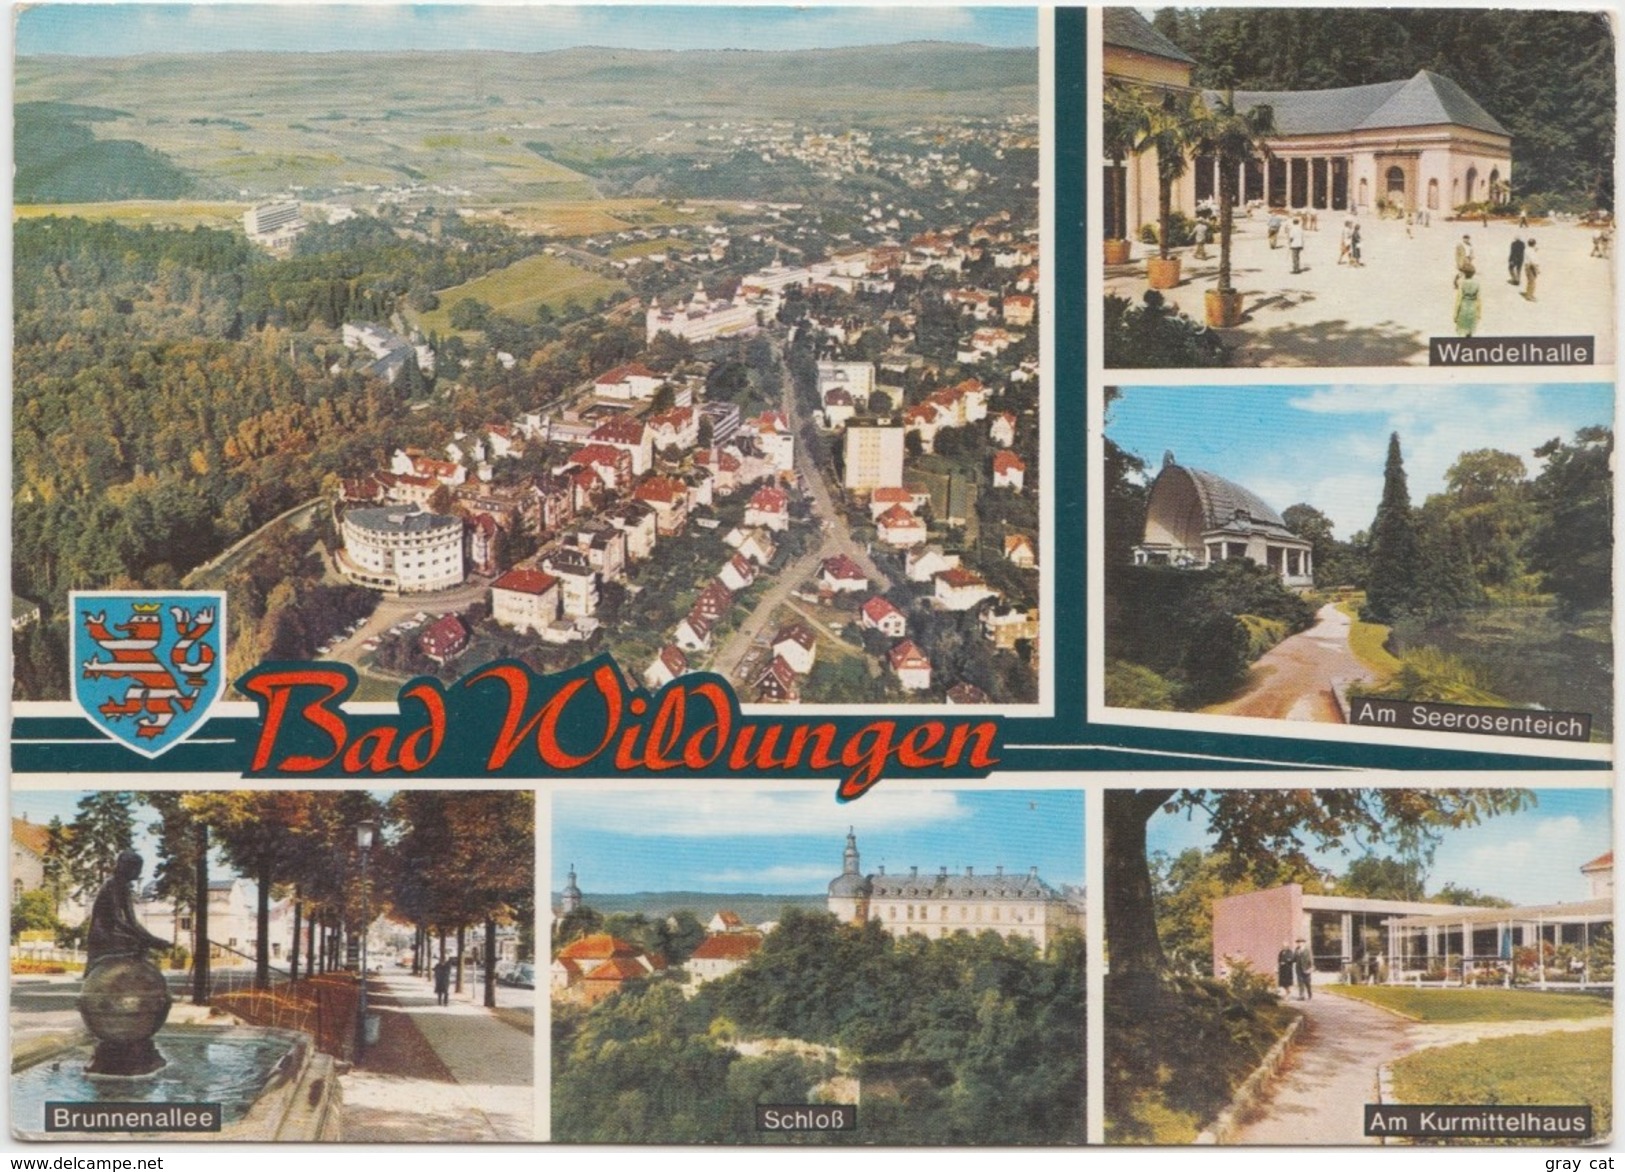 Bad Wildungen, Germany, Multi View, 1973 Used Postcard [20572] - Bad Wildungen